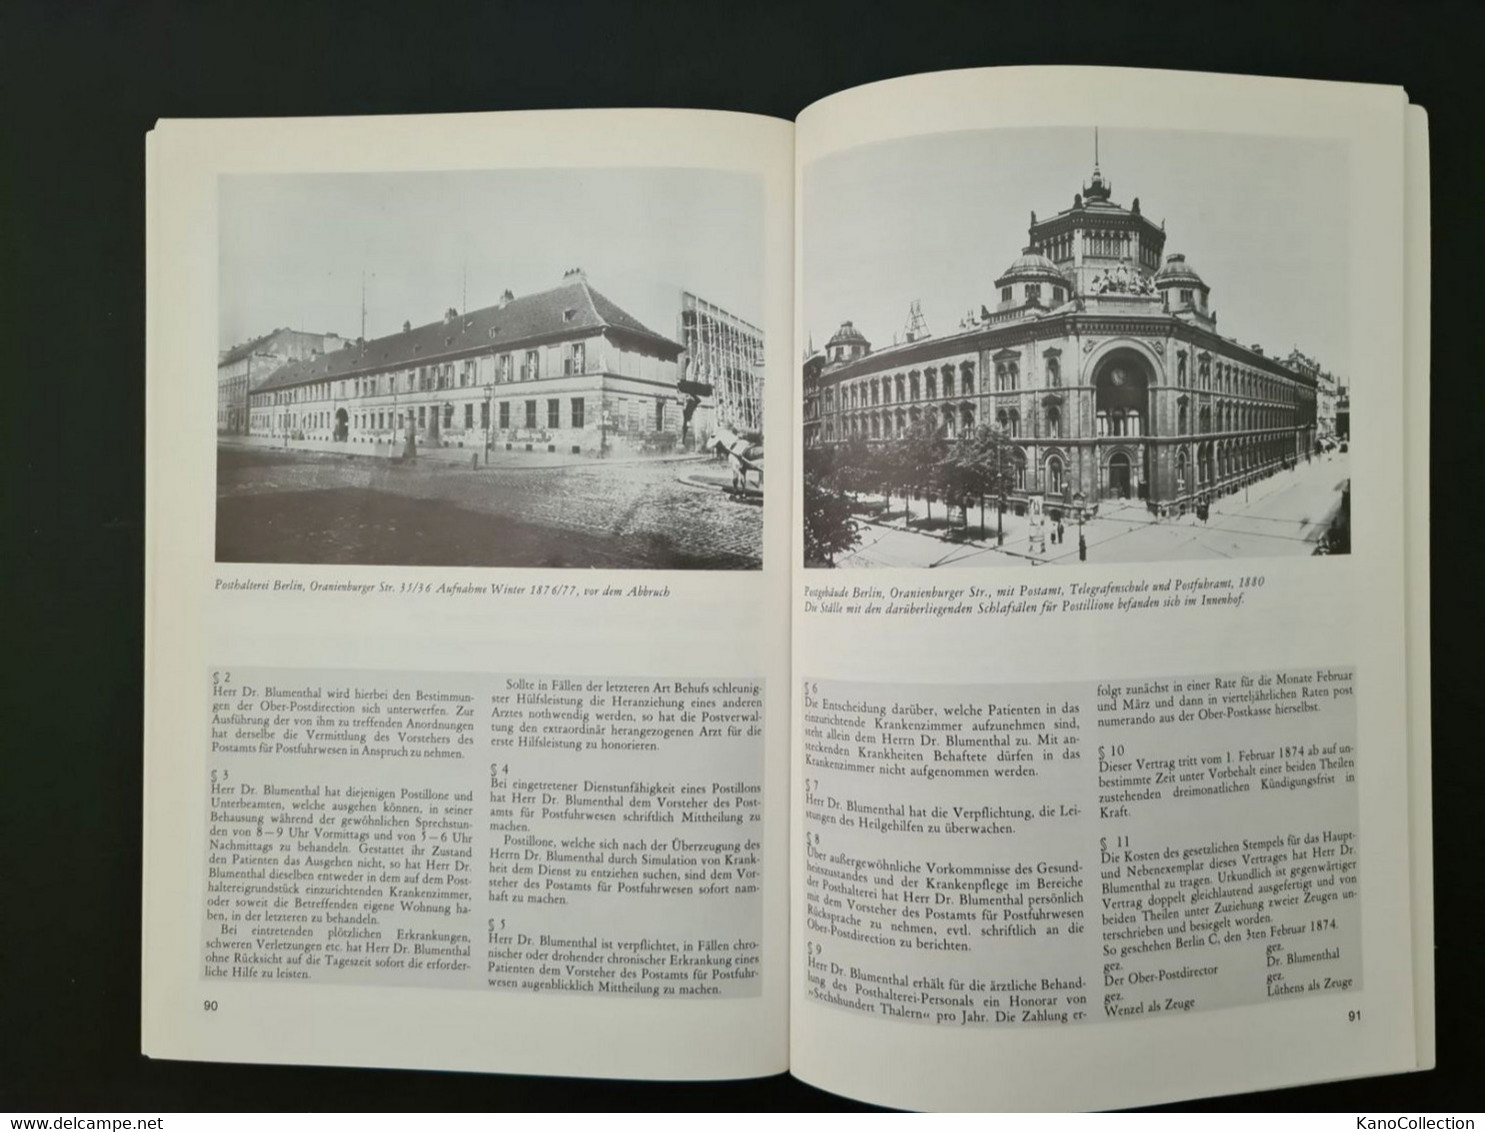 Archiv Für Deutsche Postgeschichte, Heft 1 1982, 128 Seiten, Zahlr. Abb. - Altri & Non Classificati